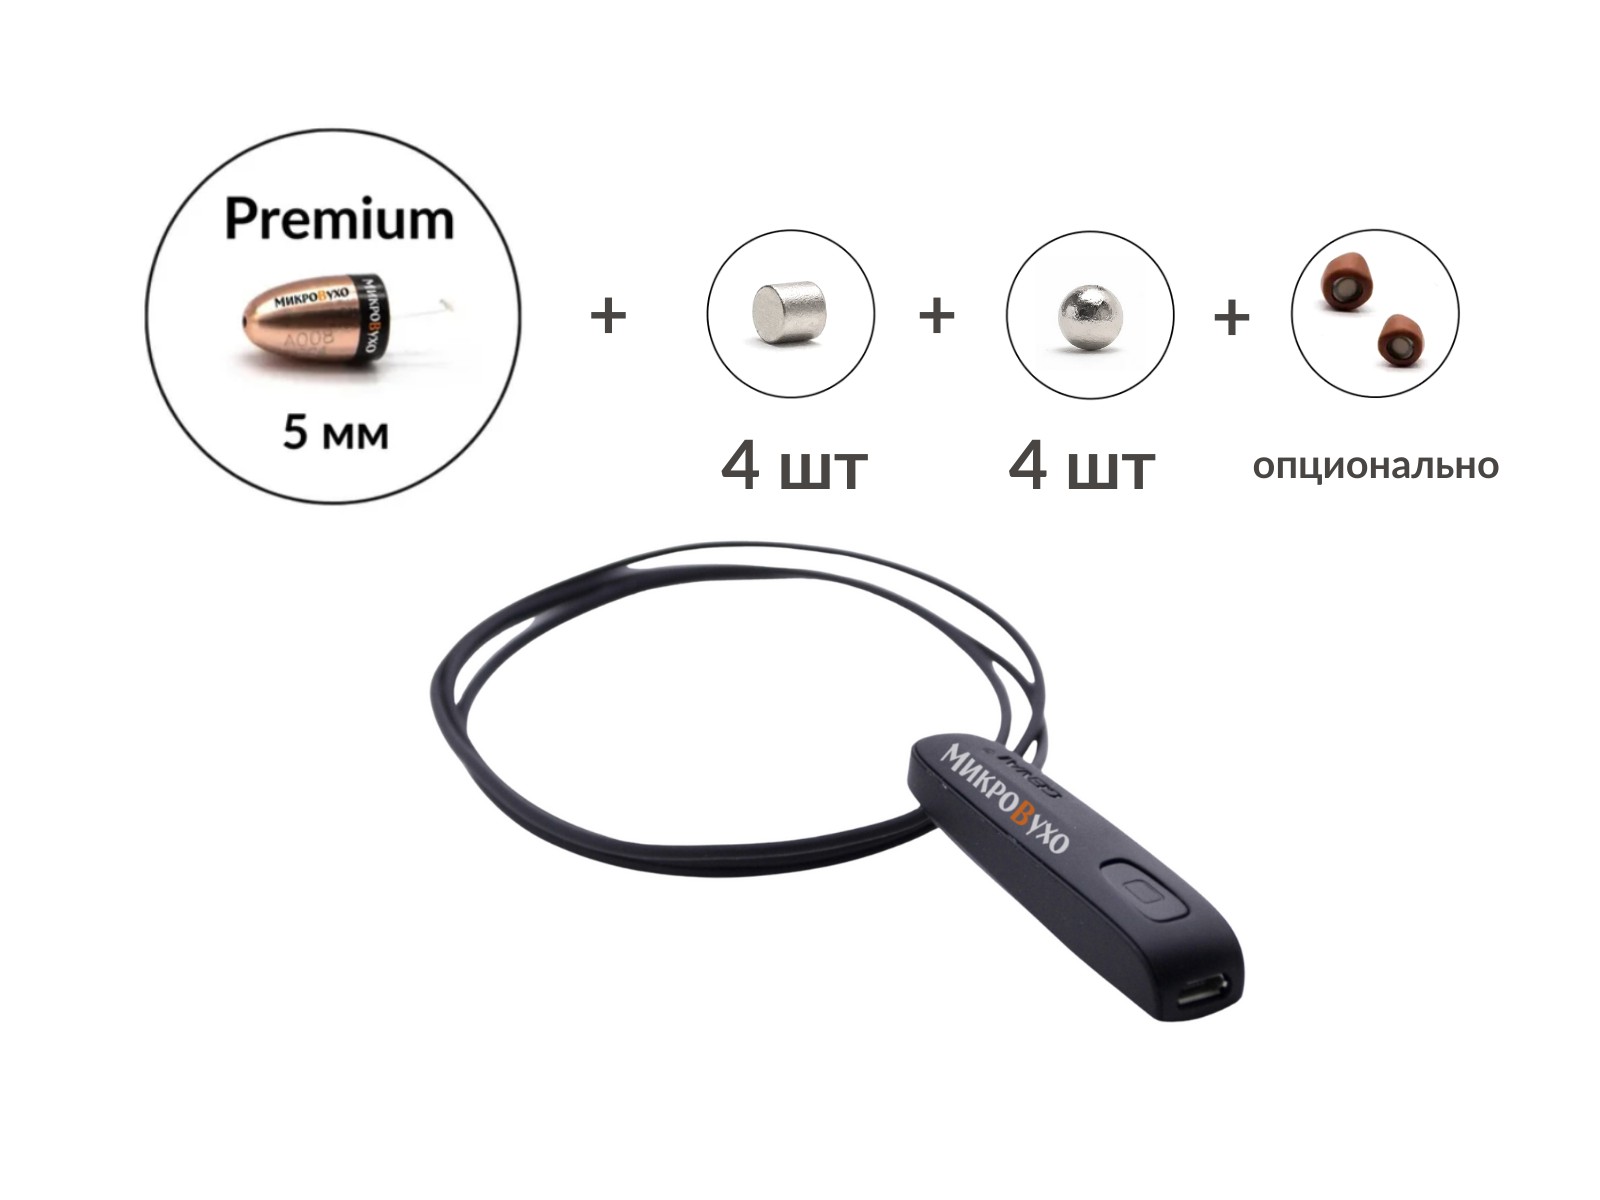 Универсальная гарнитура Bluetooth Basic с капсулой Premium и магнитами 2 мм - изображение